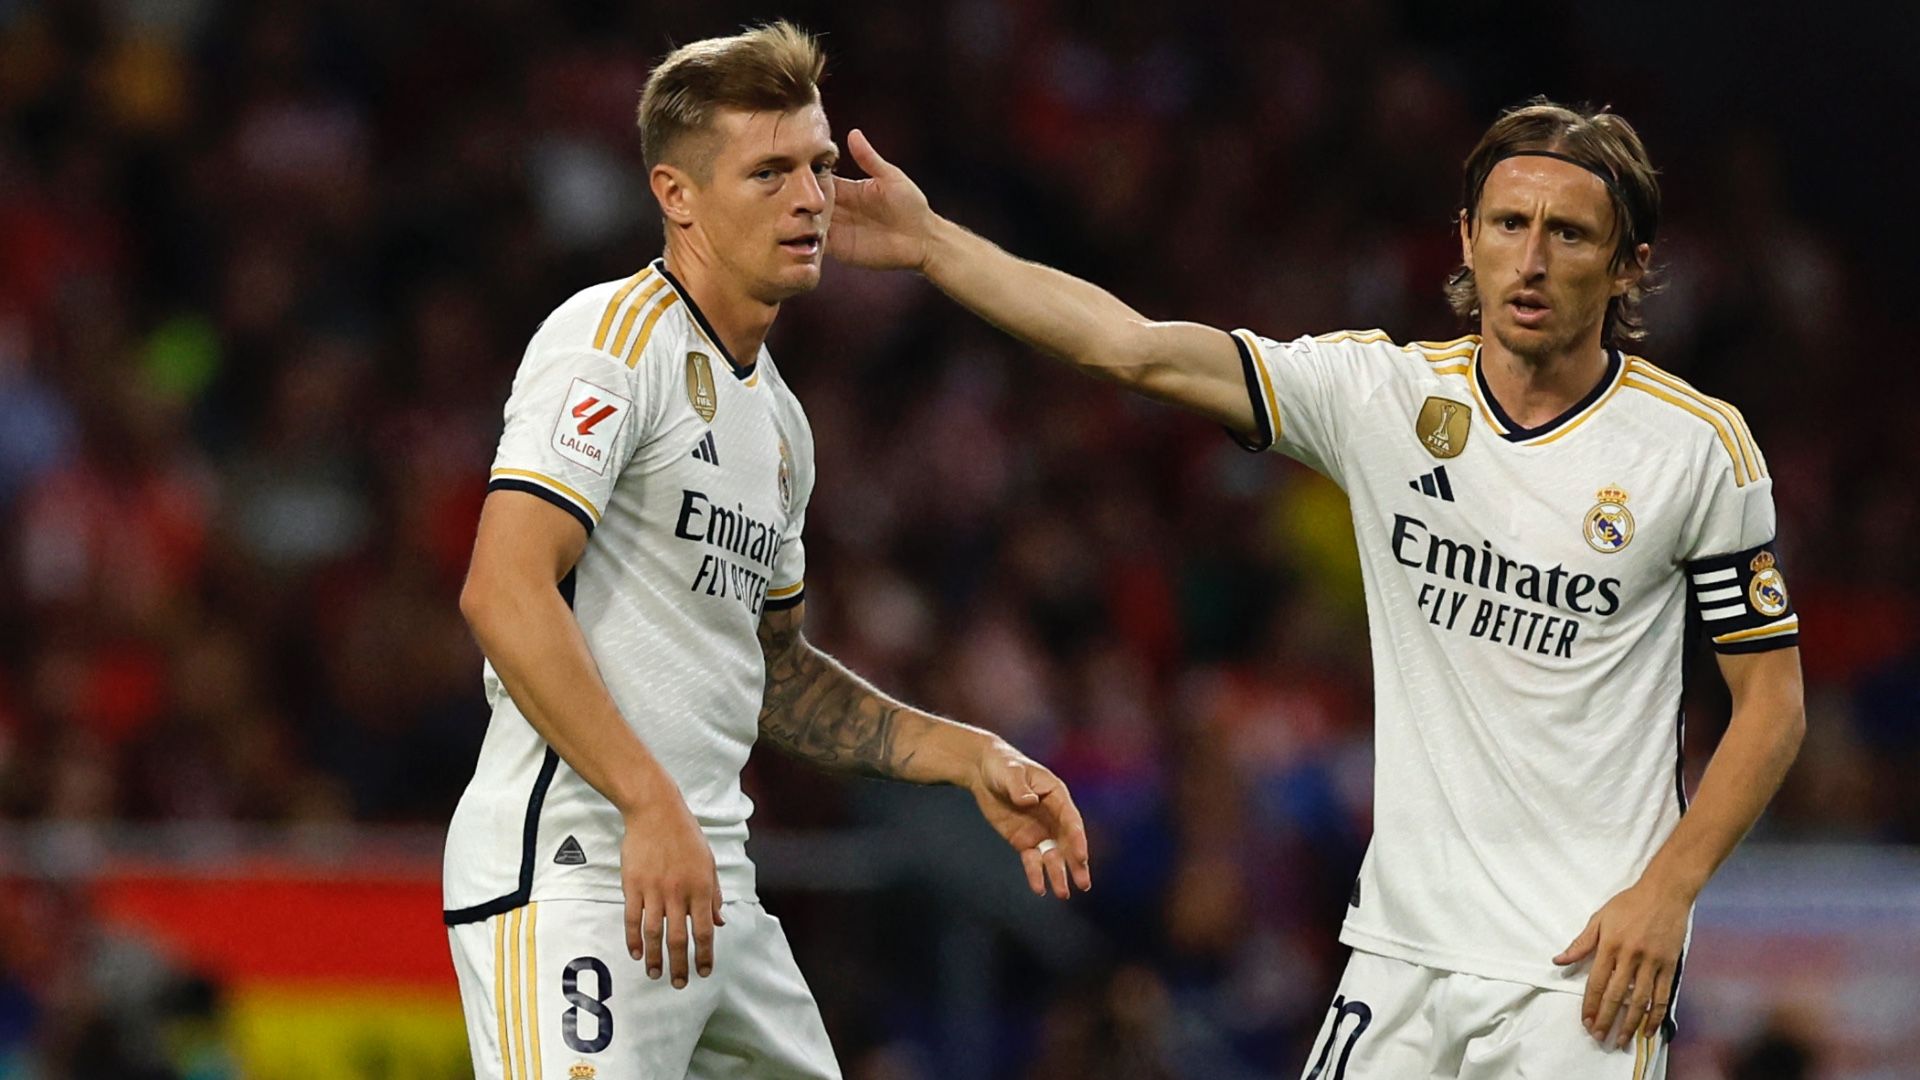 “Saya Akan Merindukanmu, Kawan” – Pesan Emosional Bintang Real Madrid Luka Modric Buat Toni Kroos Yang Putuskan Pensiun